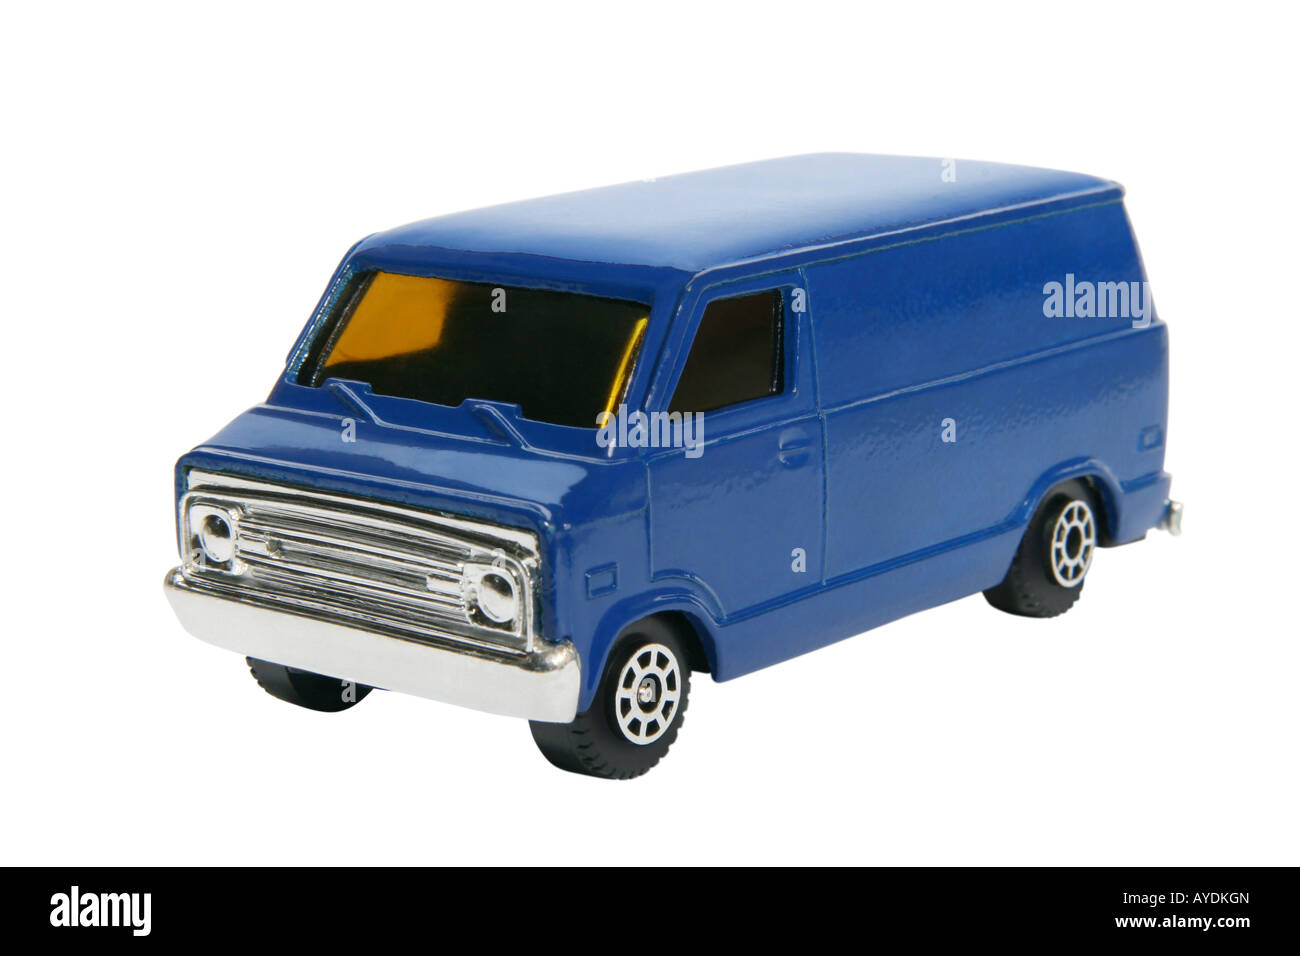 Blue toy van Stock Photo - Alamy